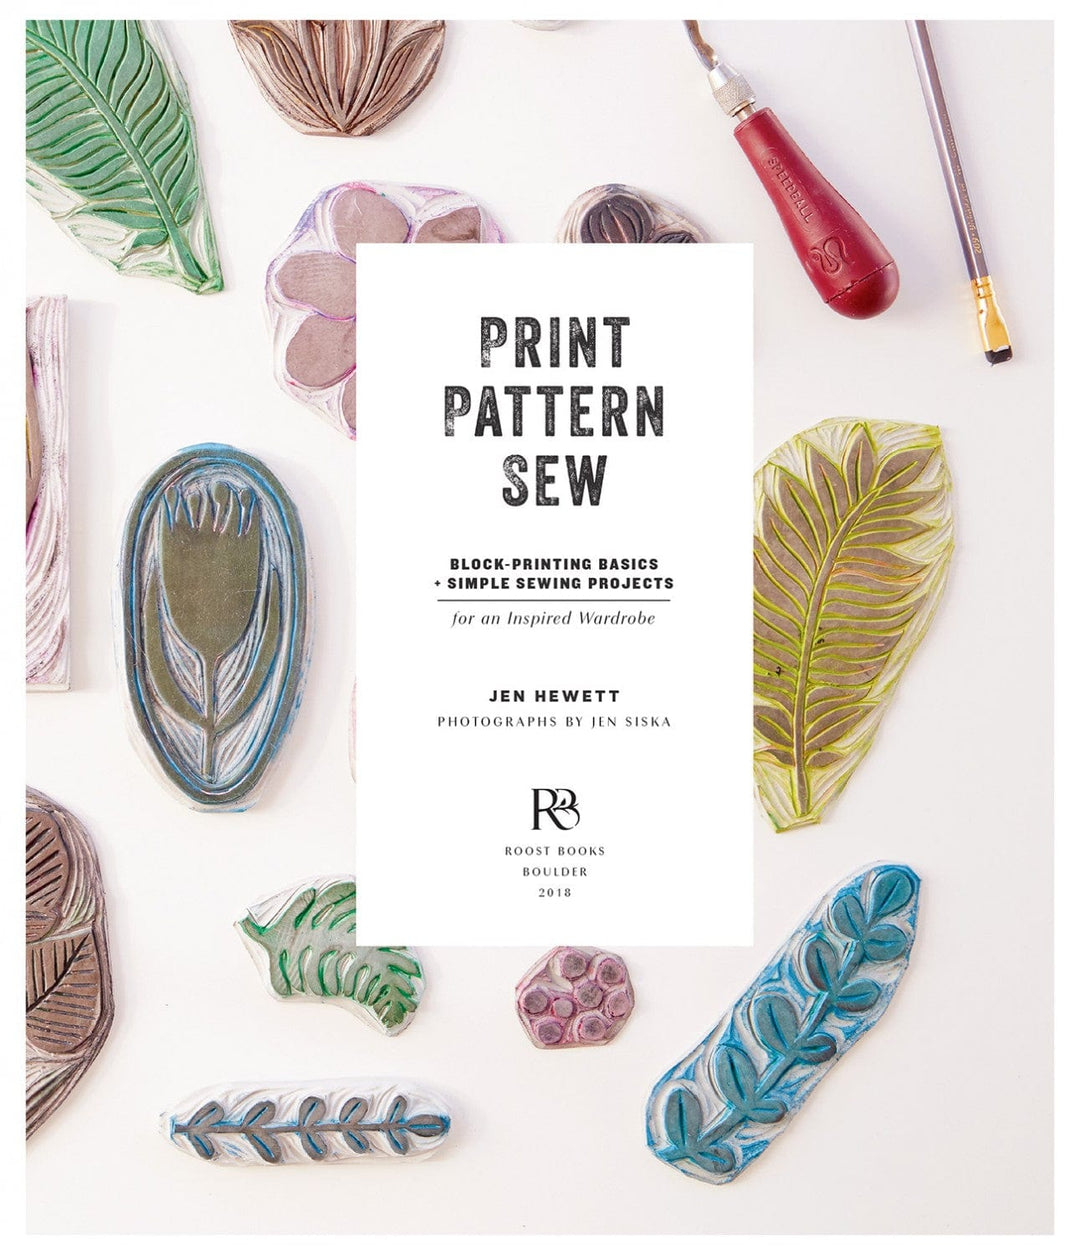 Print Pattern Sew by Jen Hewett